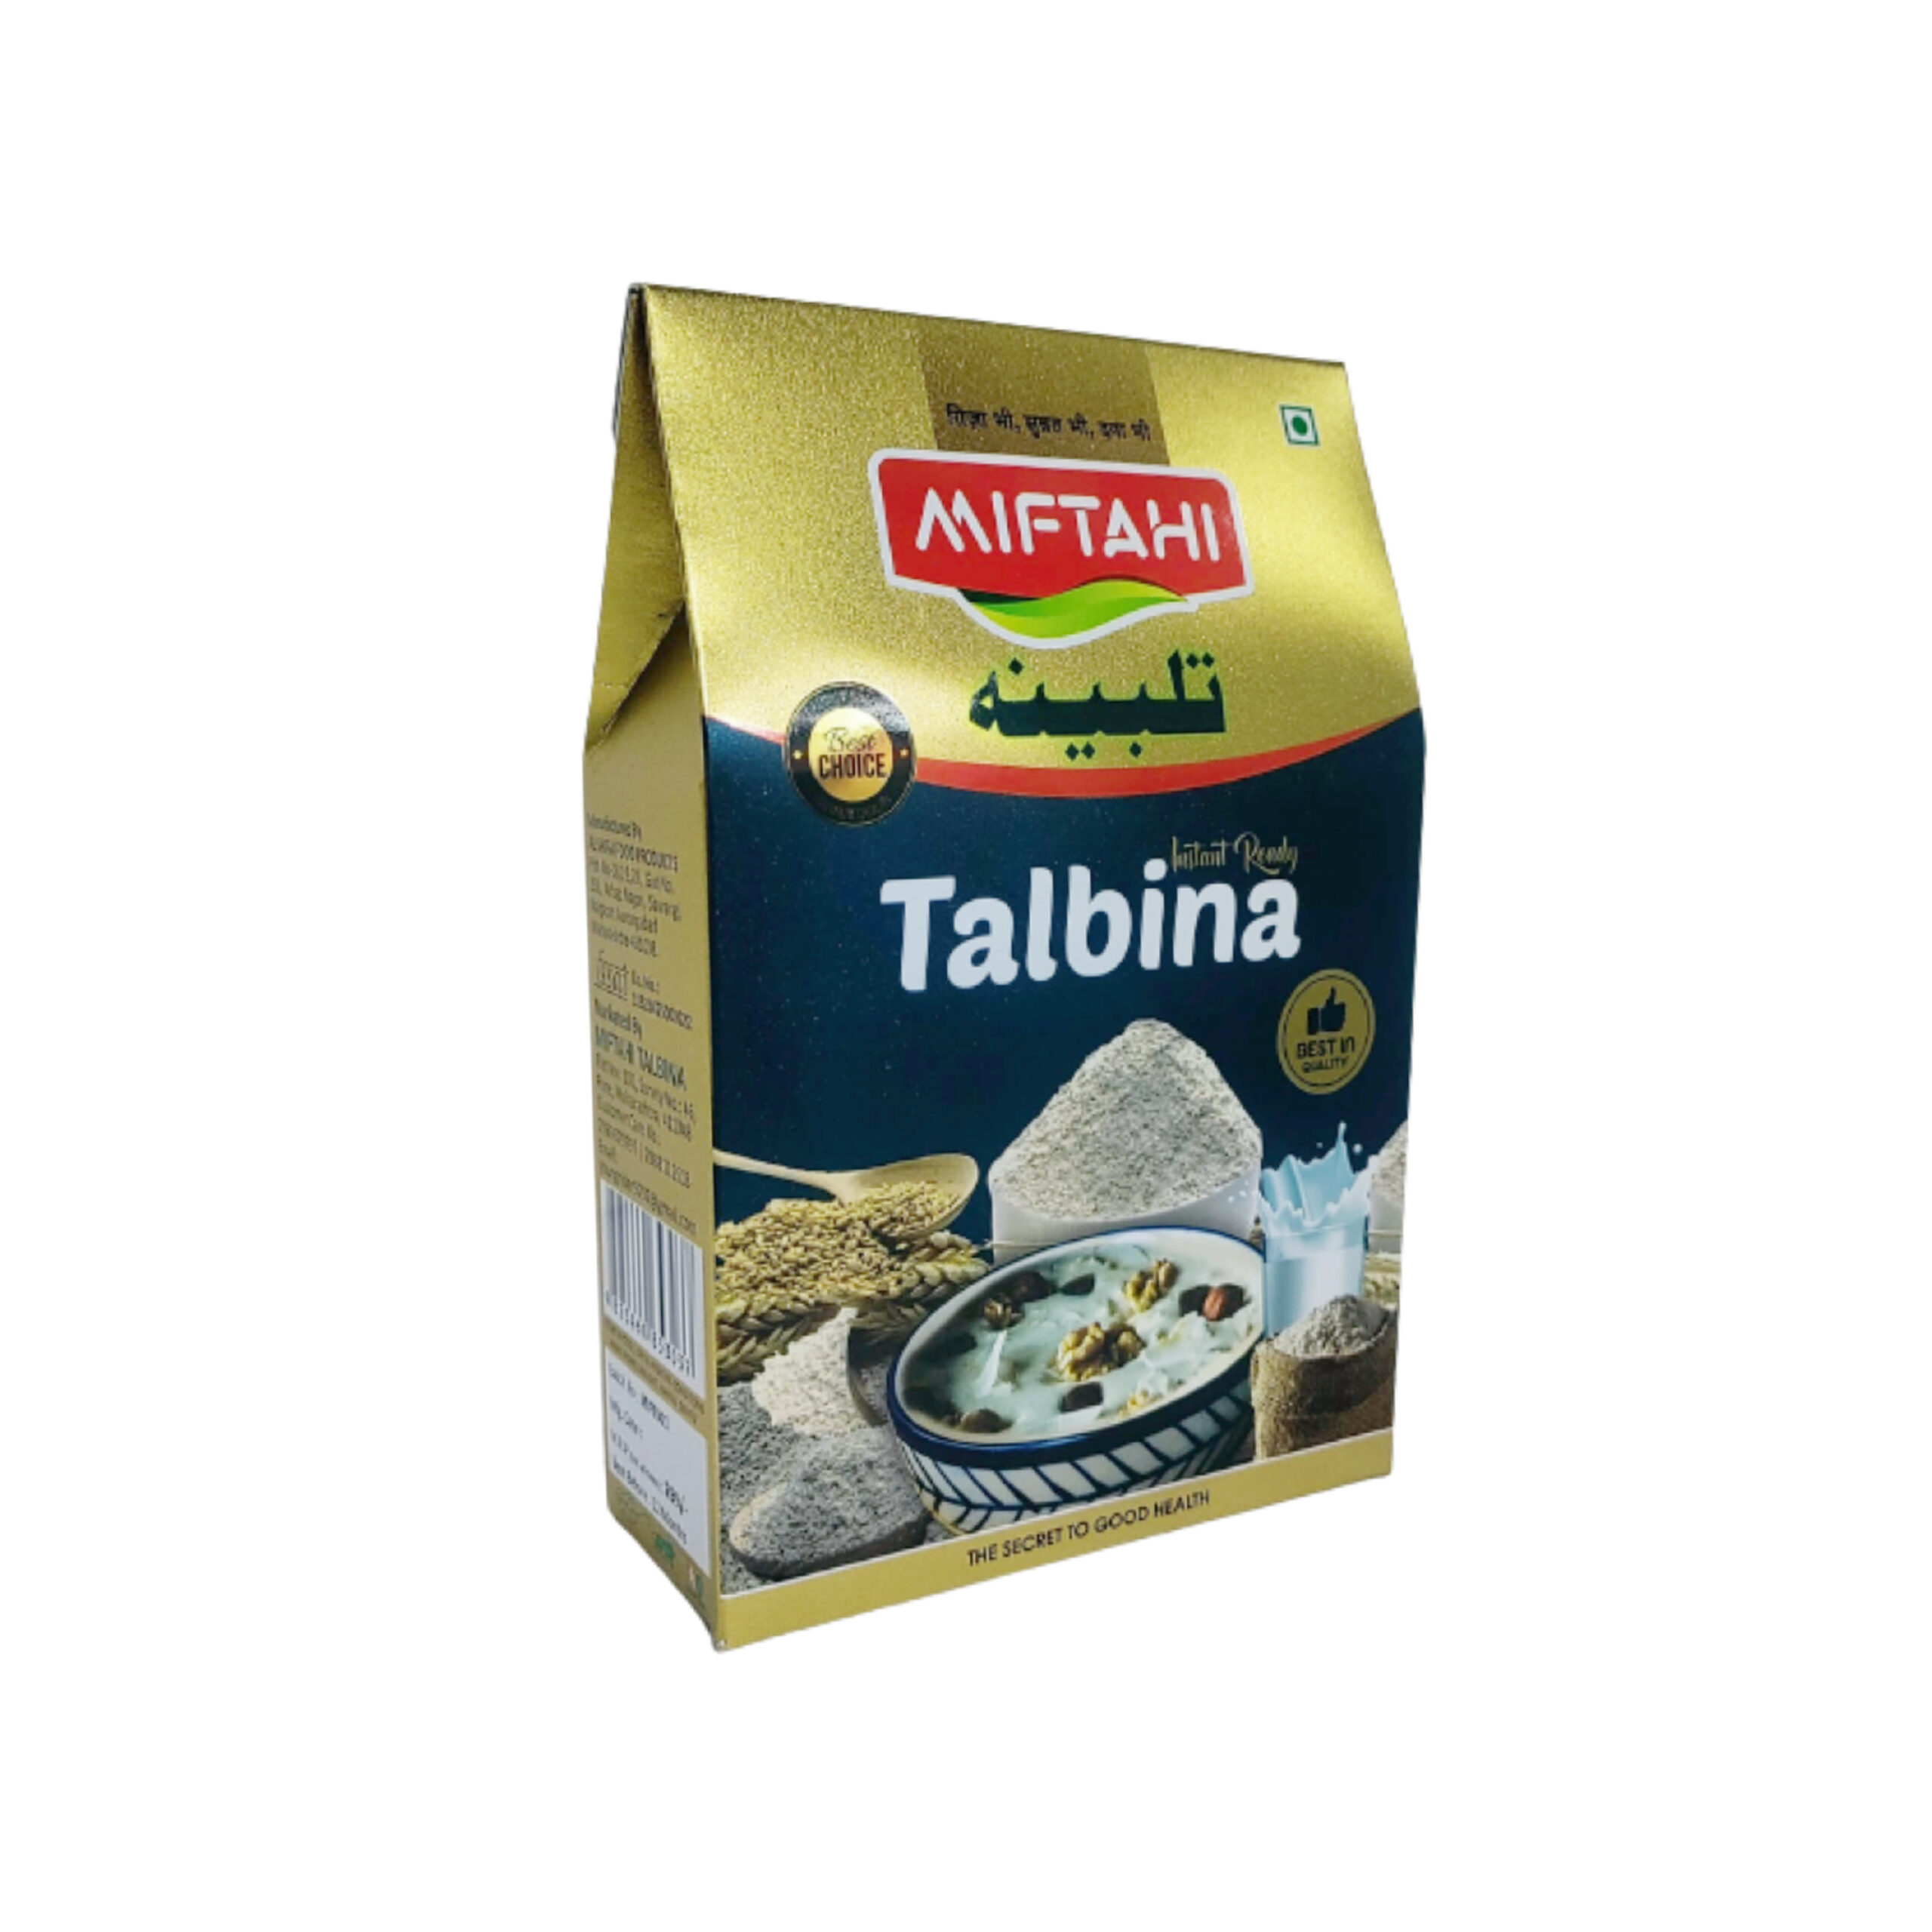 AOZA Talbina Organic 200 g